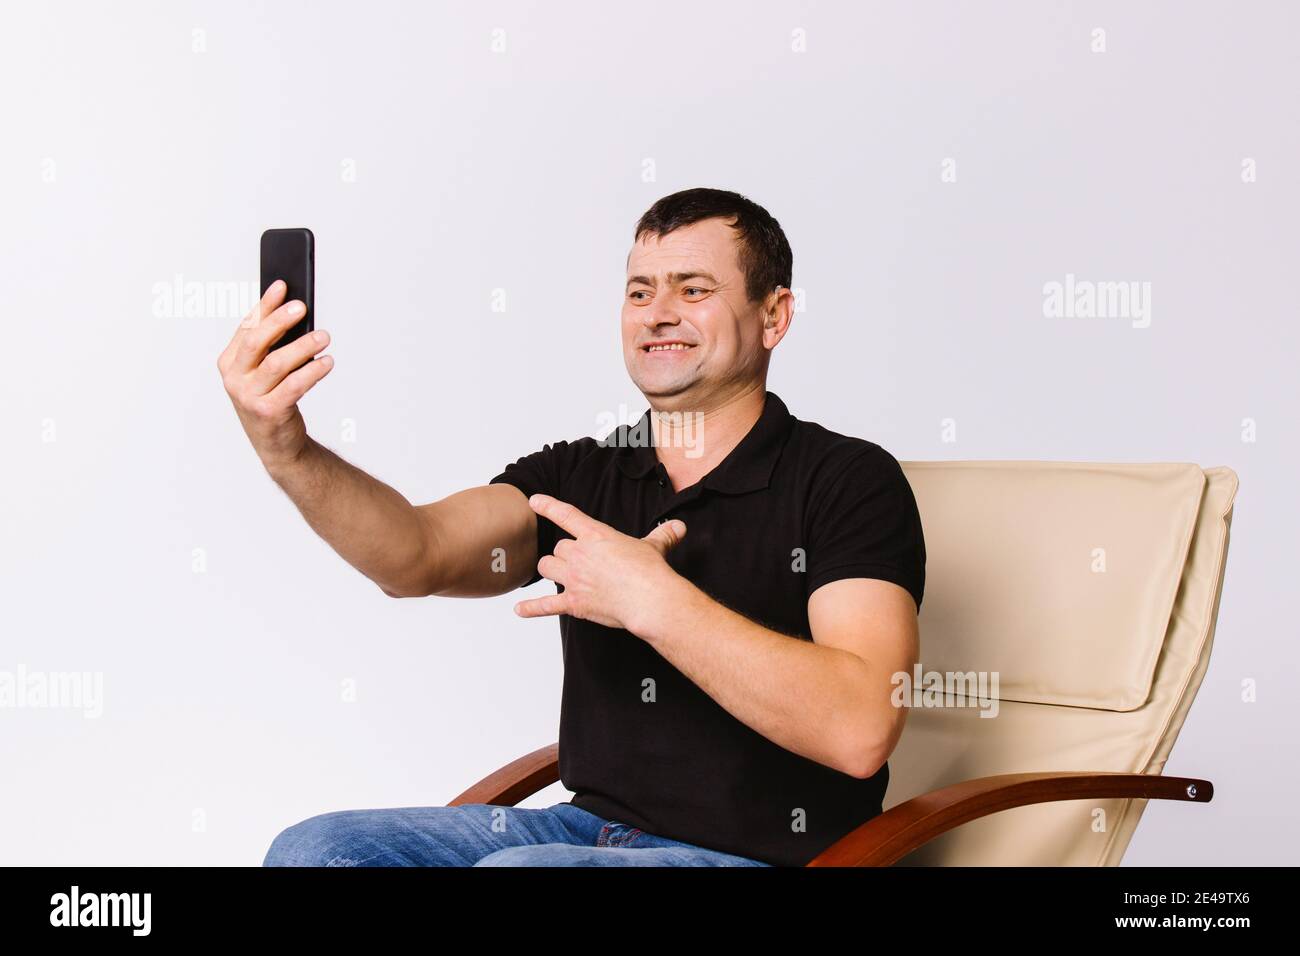 Der ältere Mann sitzt in einem Ledersessel und kommuniziert online per Video über nonverbale Zeichen, lächelnd. Weißer Hintergrund. Stockfoto